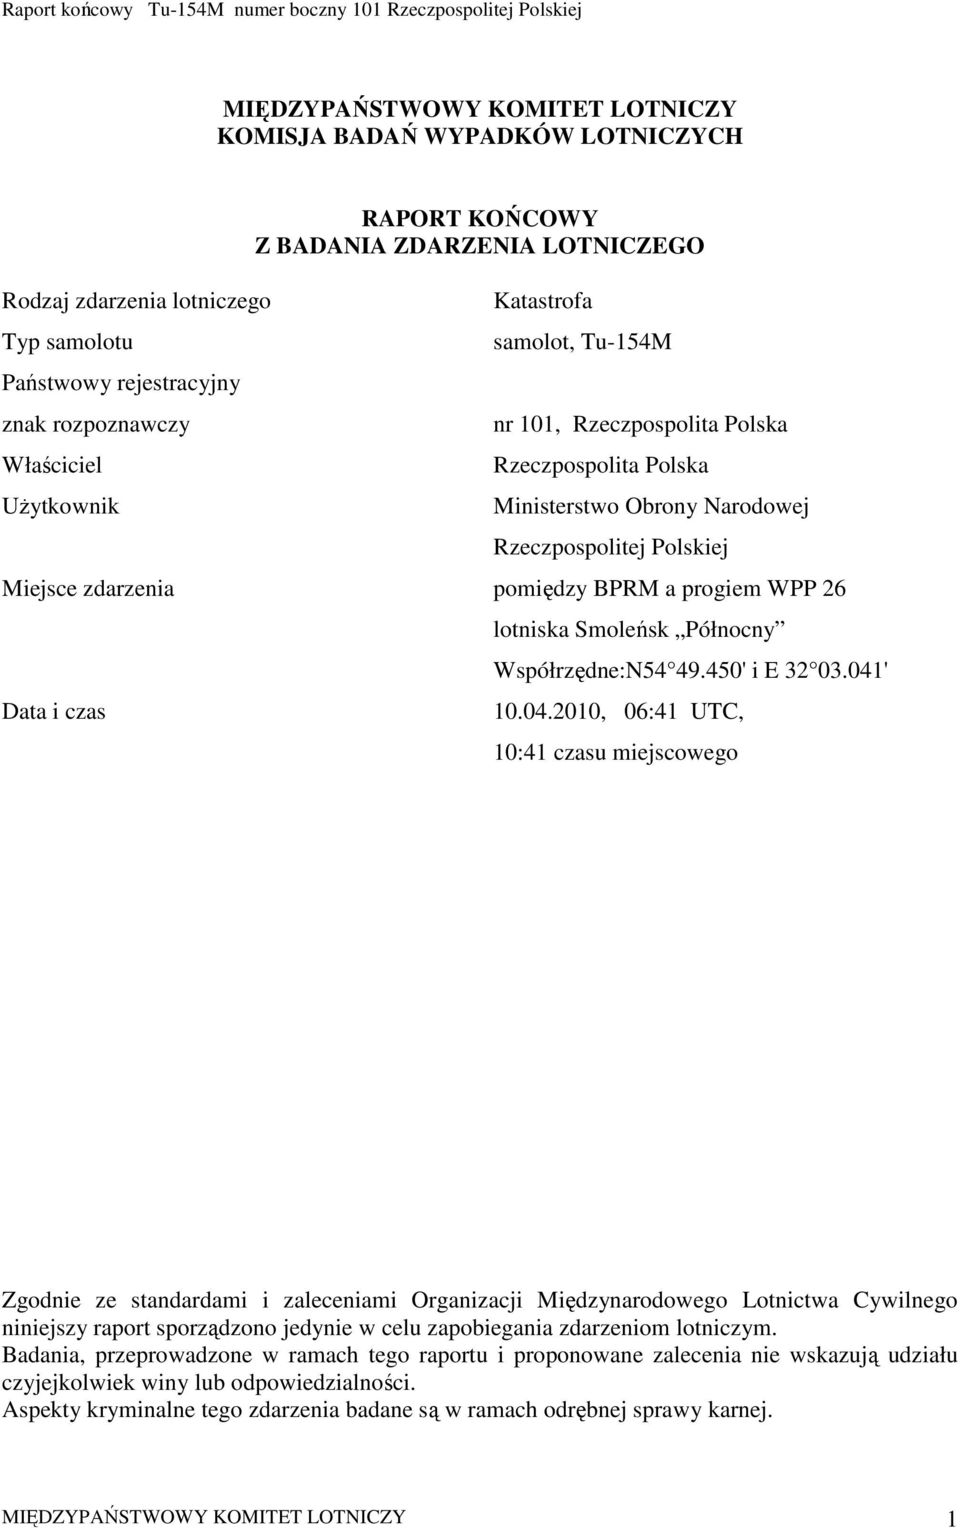 WPP 26 Data i czas lotniska Smoleńsk Północny Współrzędne:N54 49.450' i E 32 03.041